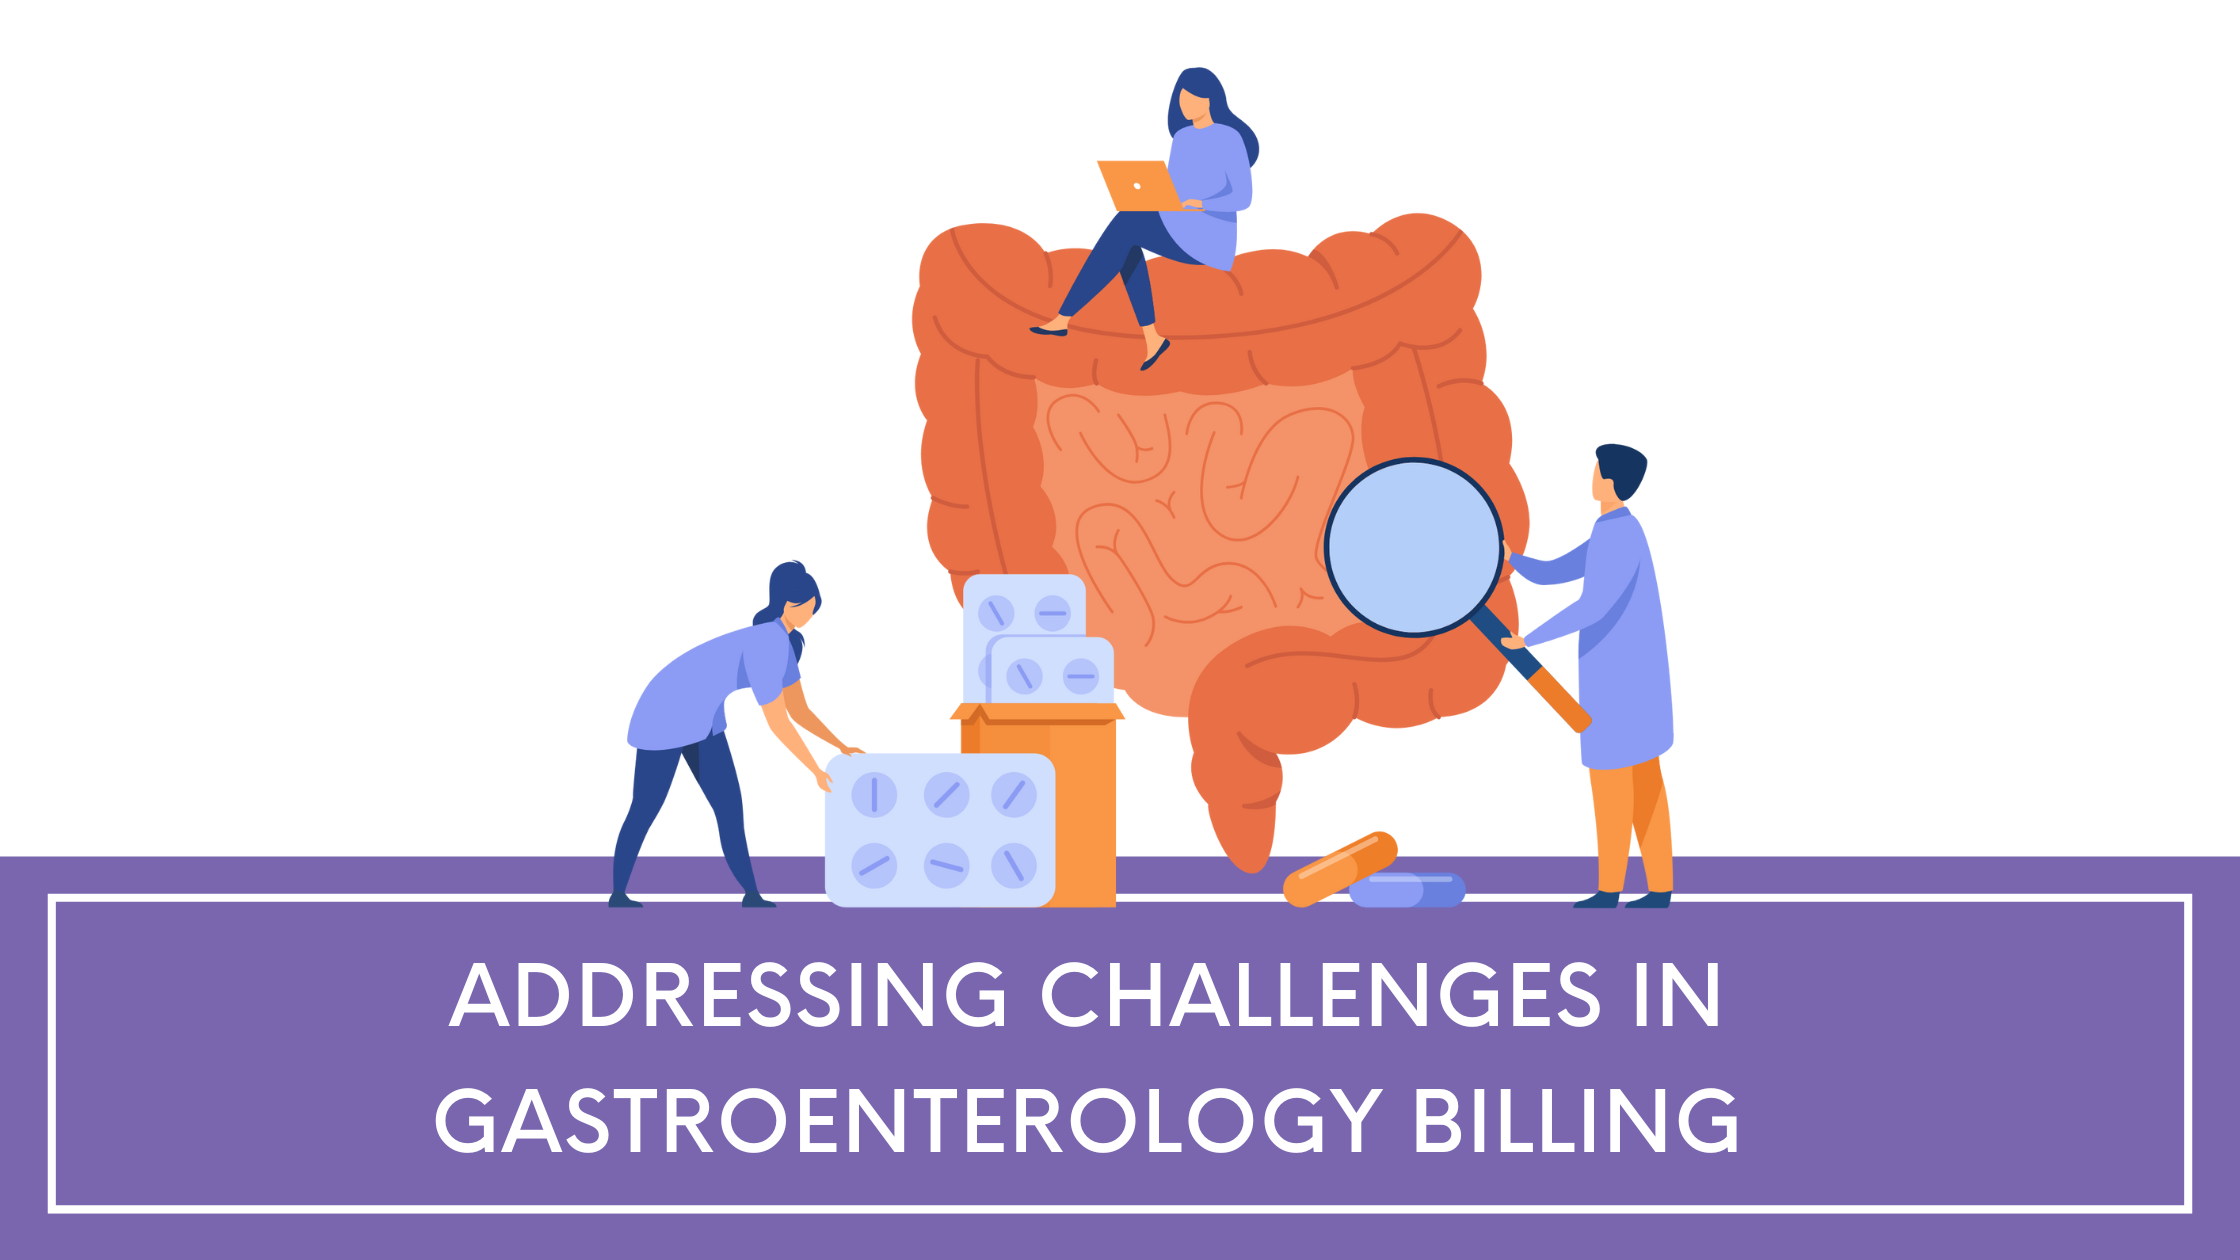 gastroenterology billing challenges